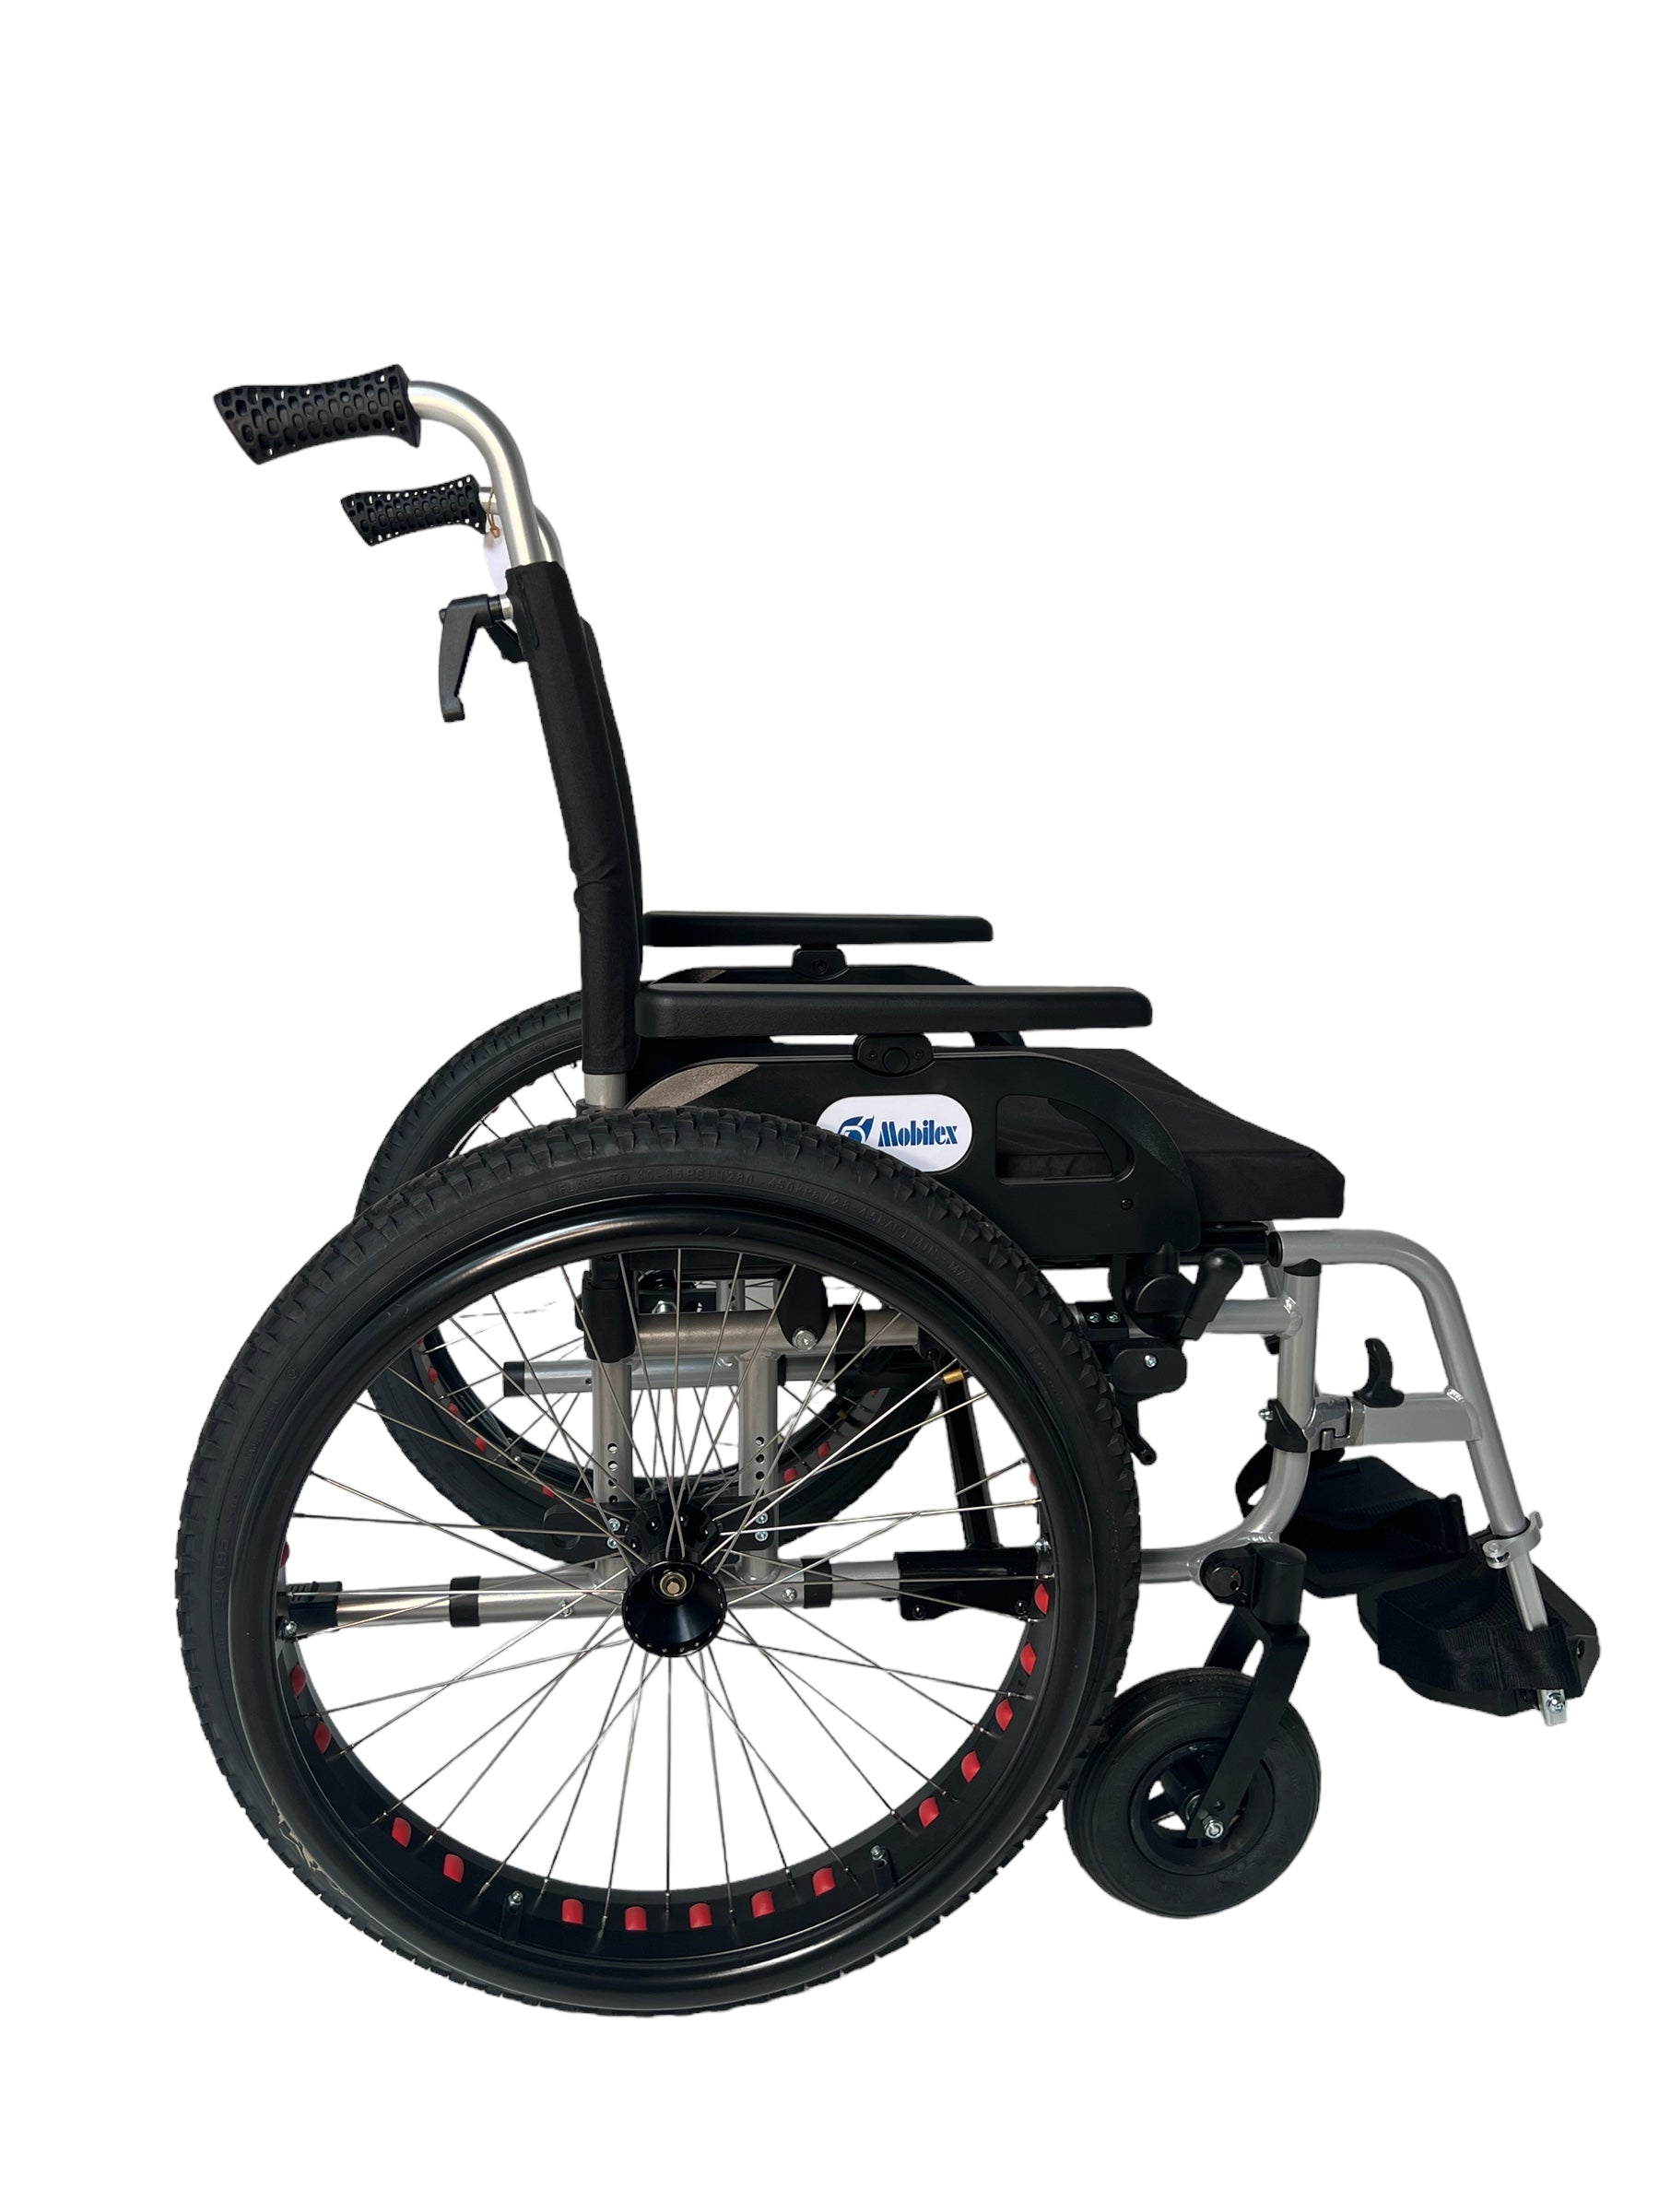 Billede af OFF-ROAD kørestol. Super lækker kørestol med terrængående dæk. 4 størrelser., 51 cm